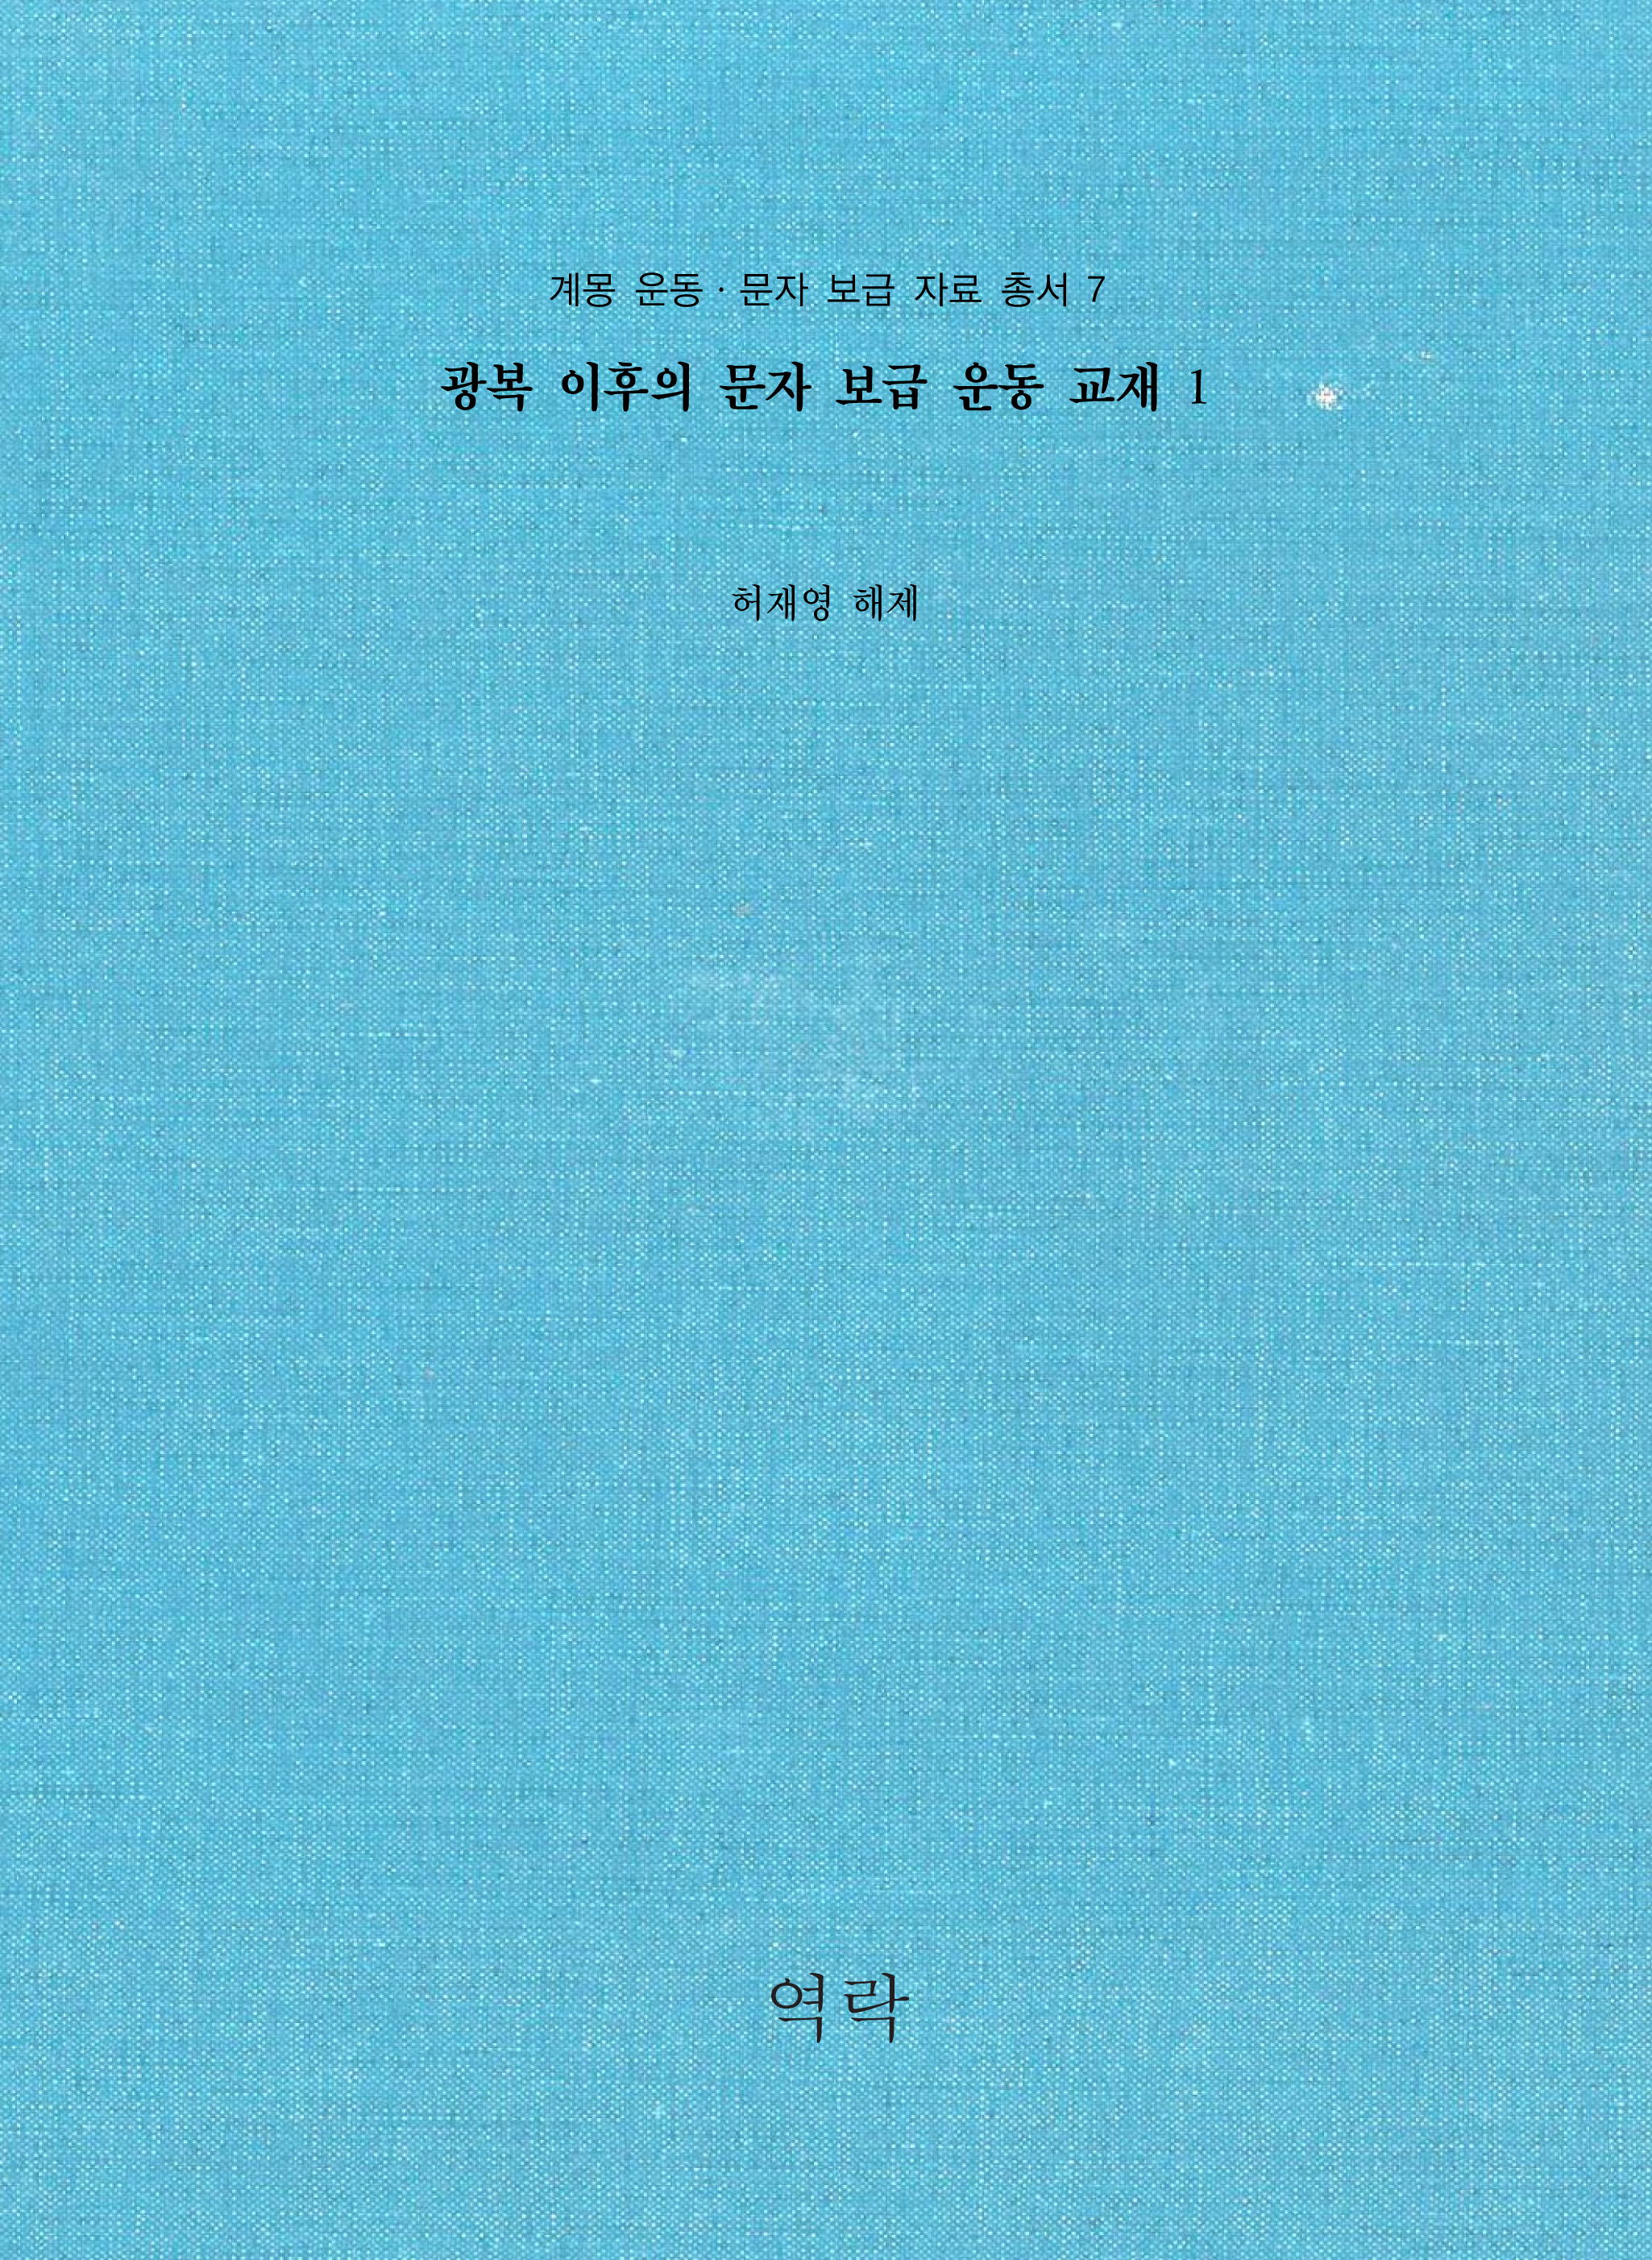 계몽 운동ㆍ문자 보급 자료 총서 7권